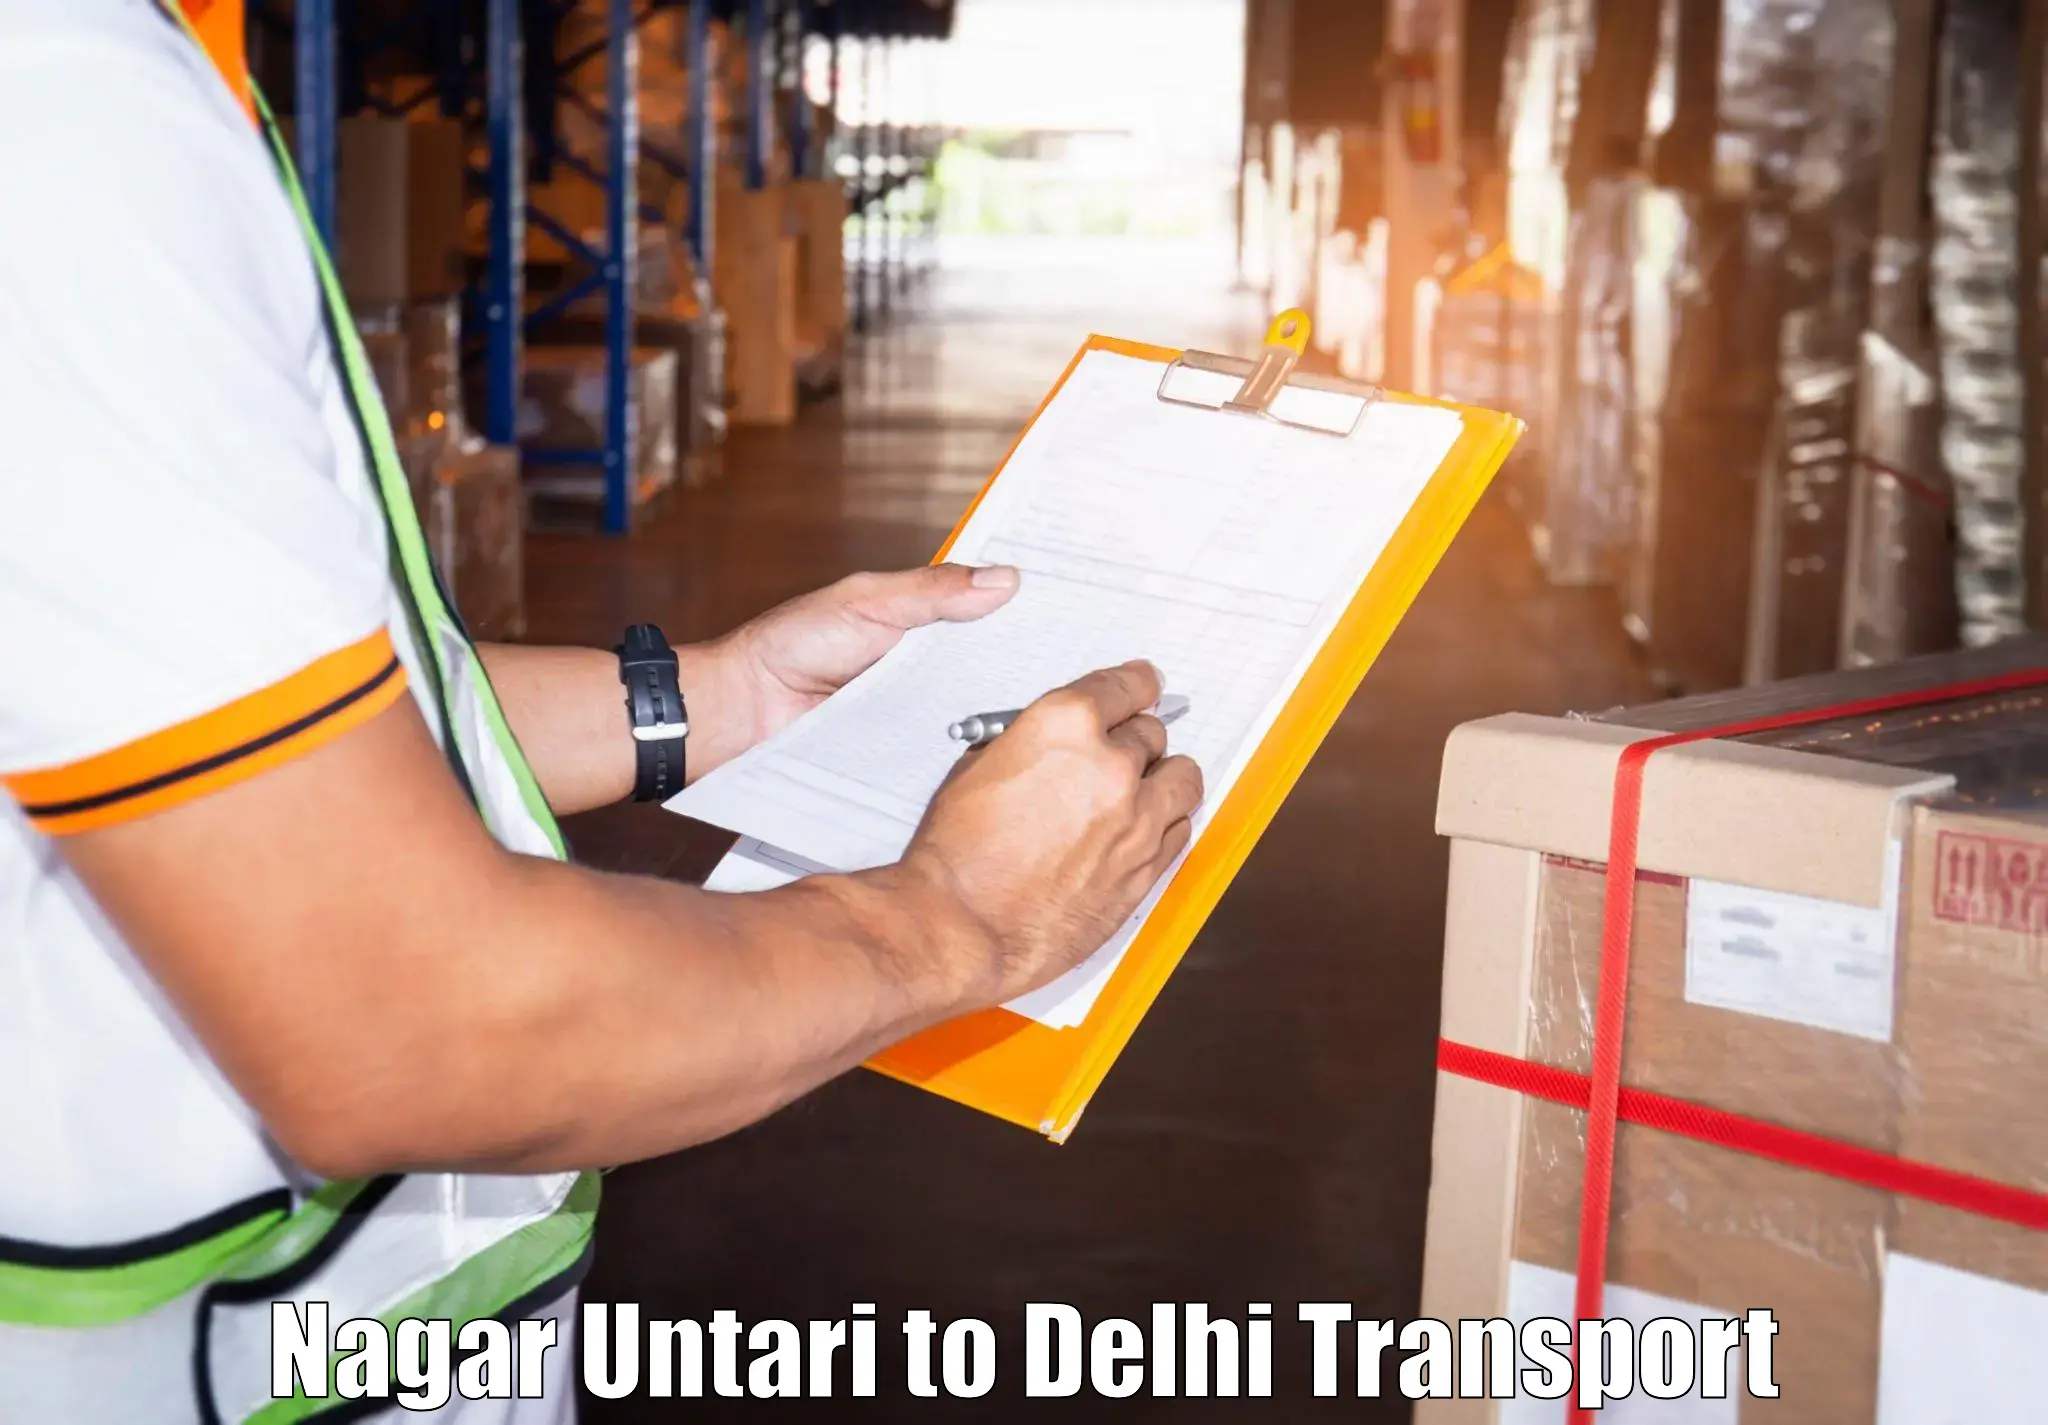 Transport in sharing Nagar Untari to University of Delhi